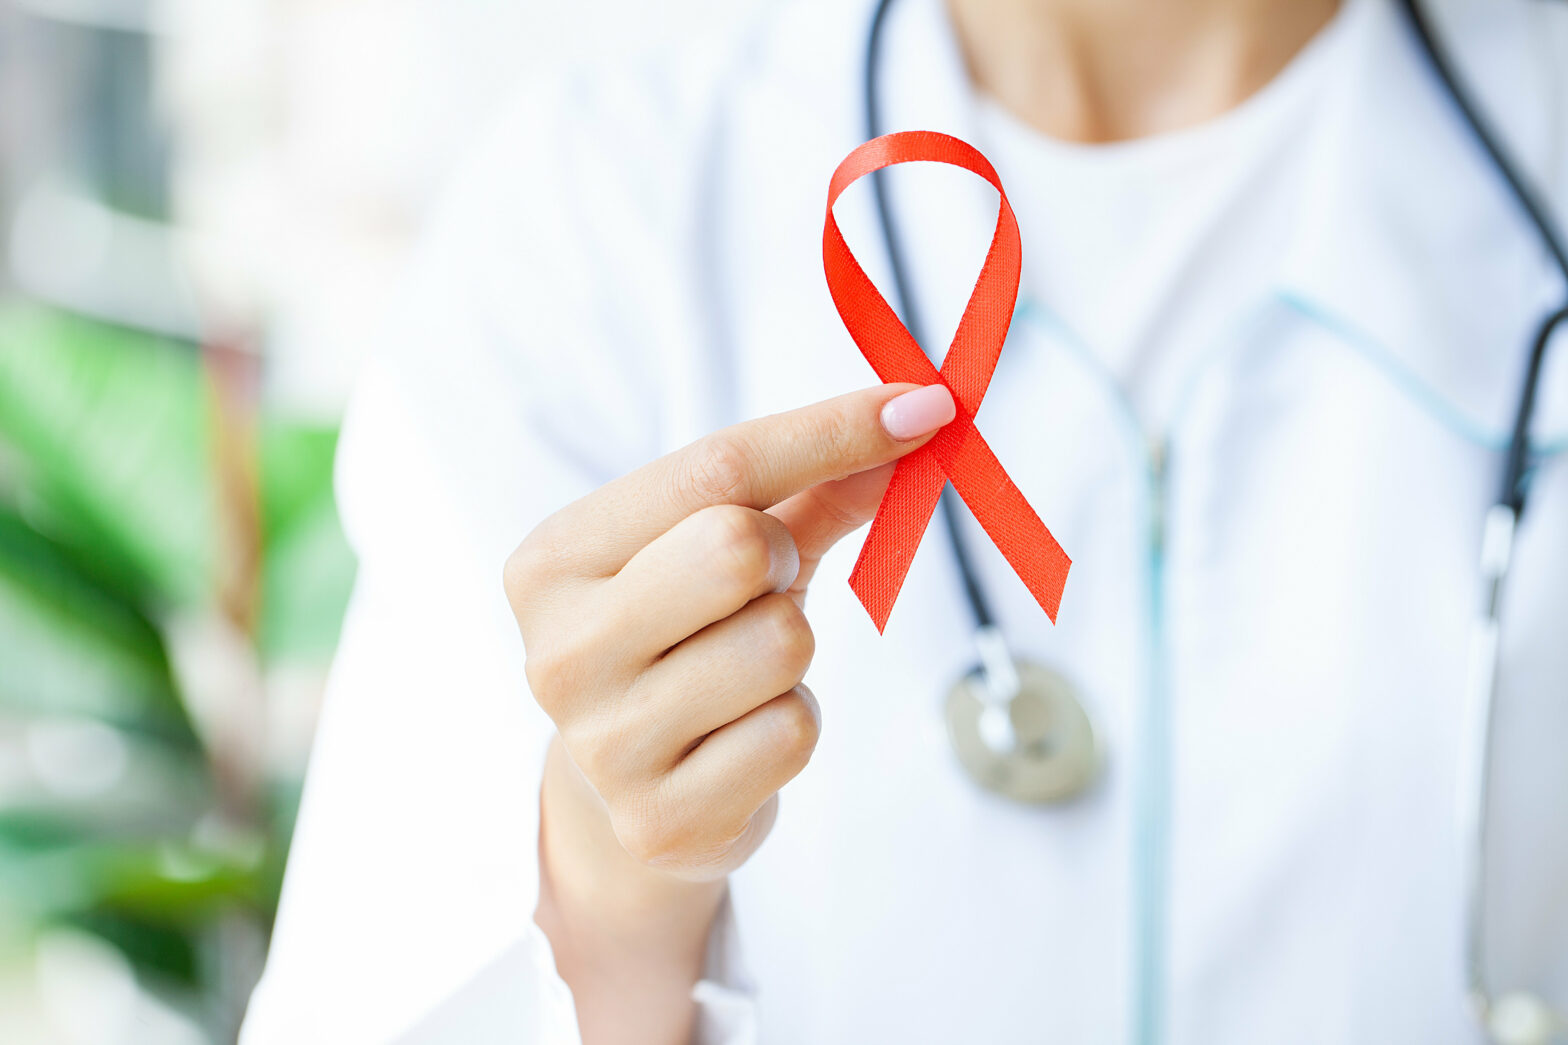 Lazo en solidaridad con pacientes de VIH - Sida